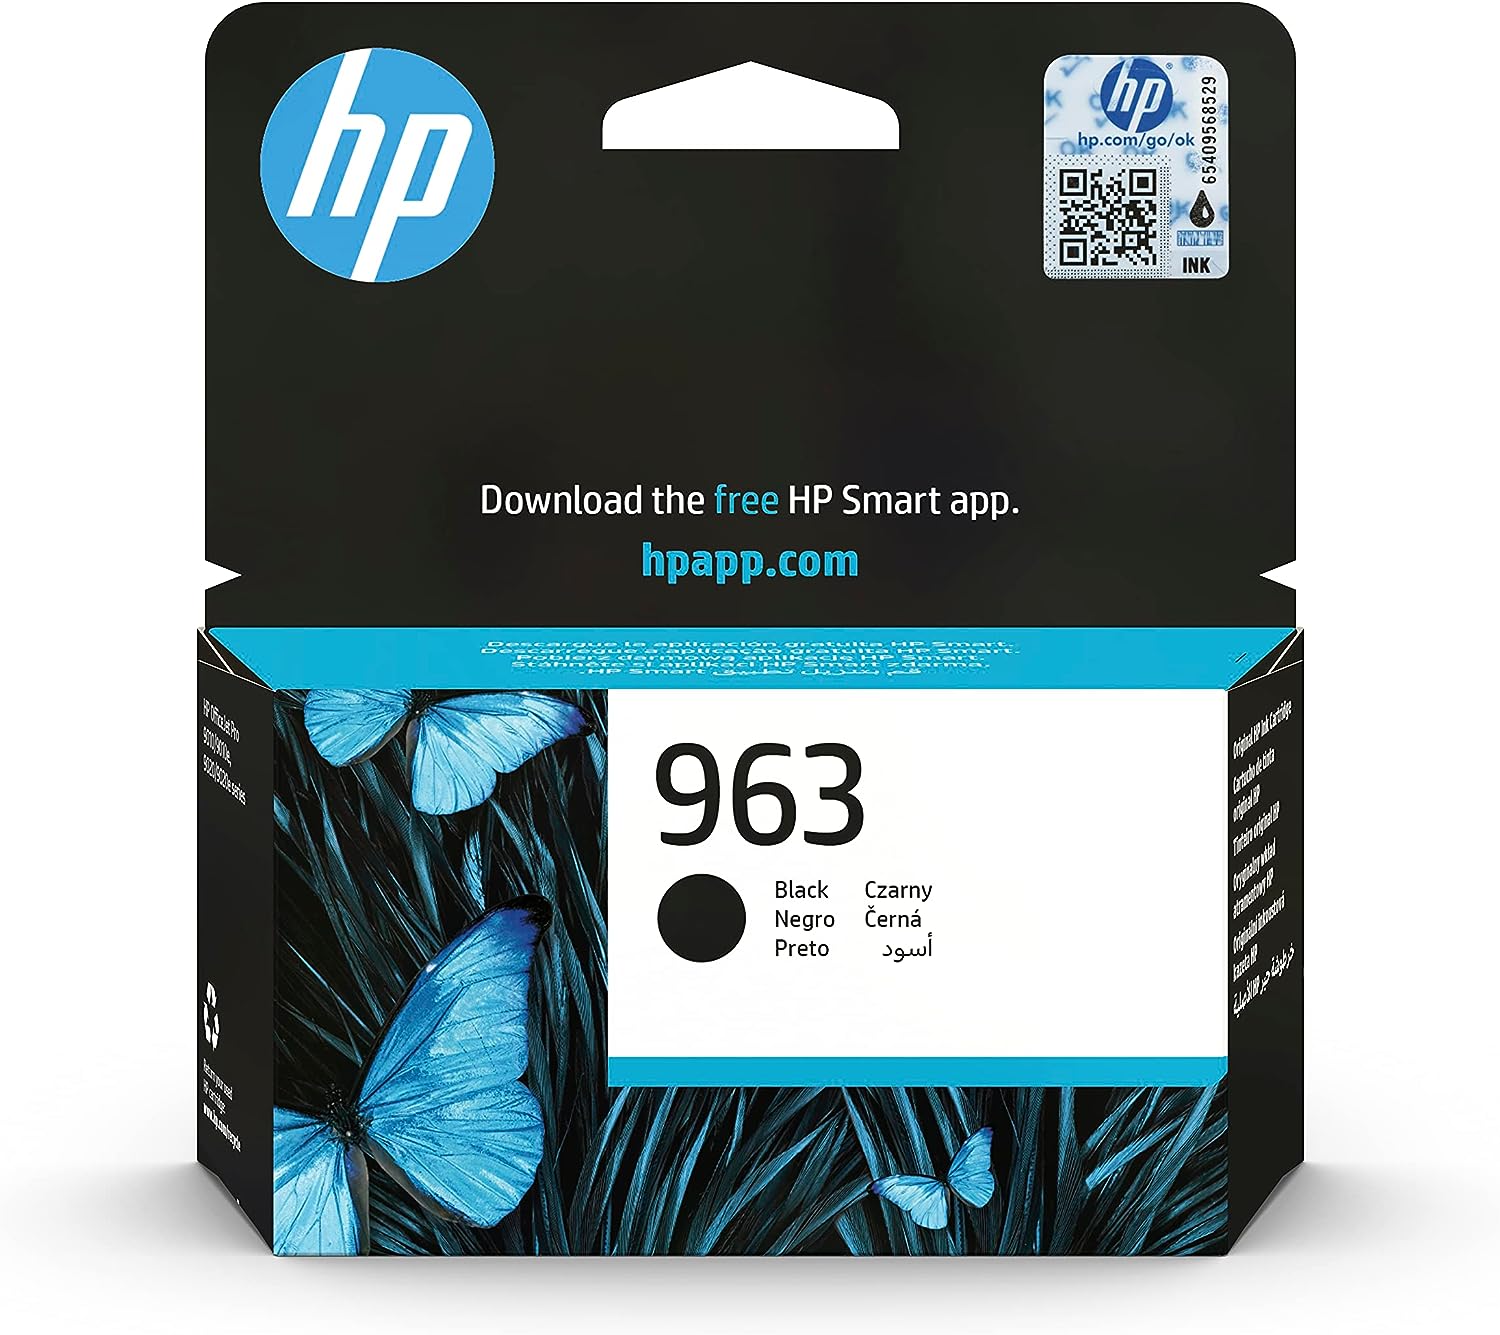 HP 963 Ink Cartridge for HP Printers, Black - 3JA26AE